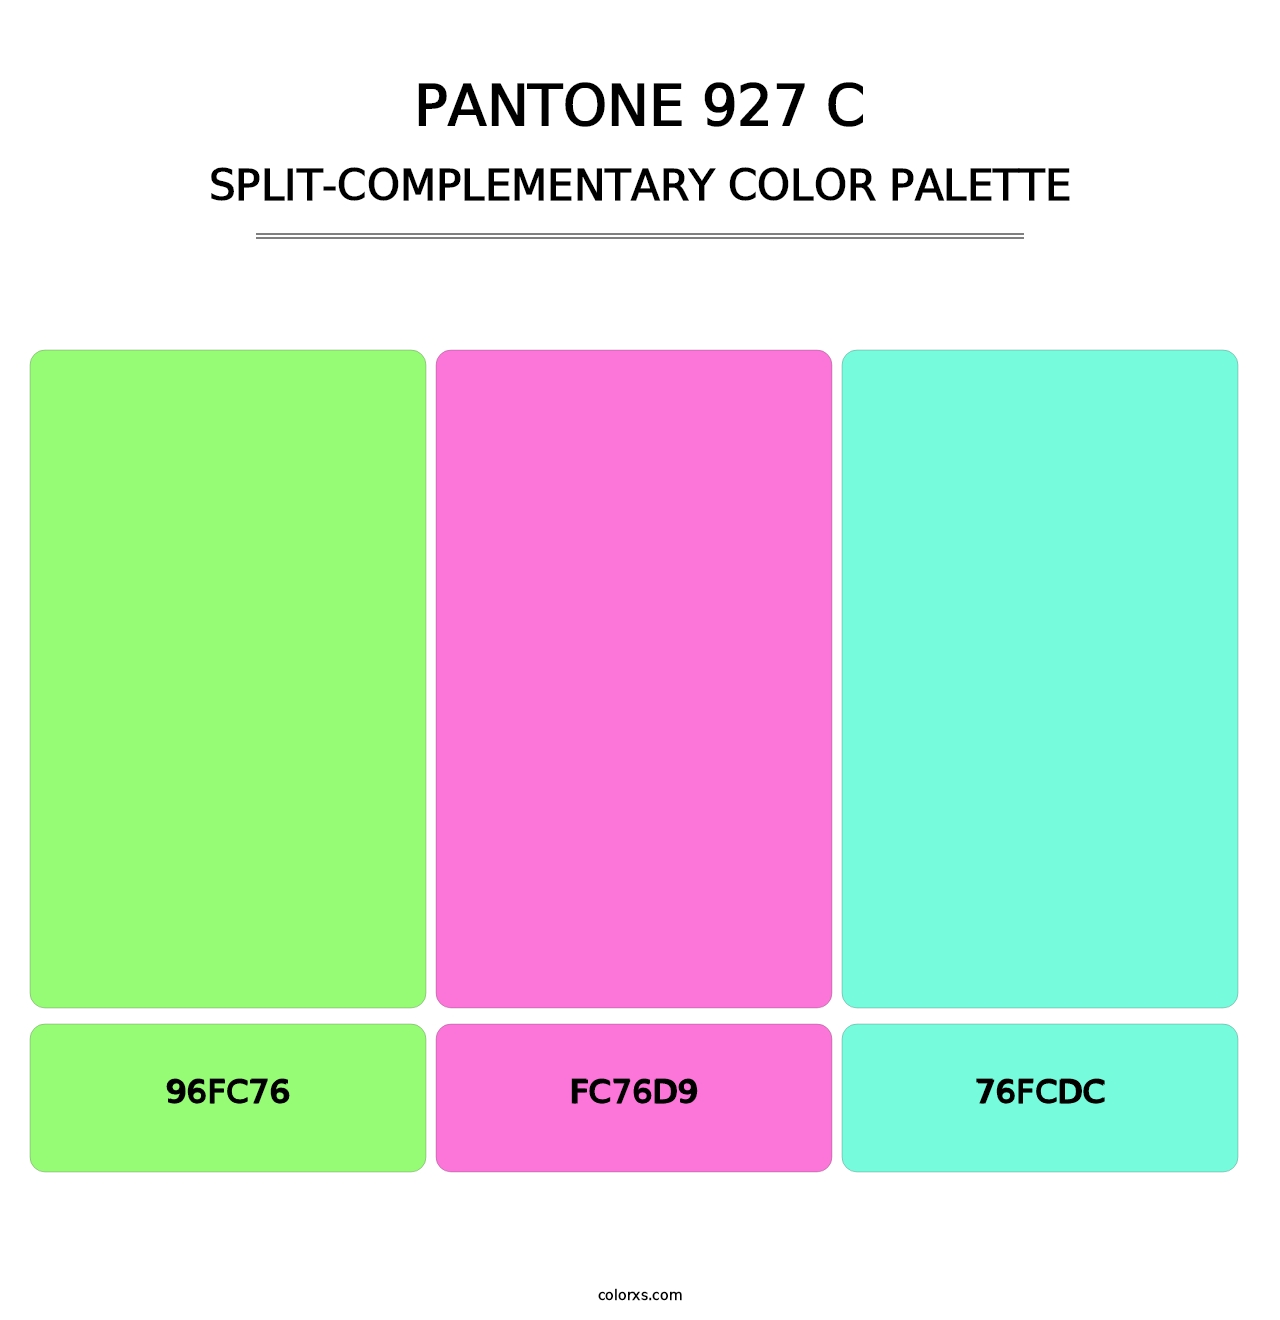 PANTONE 927 C - Split-Complementary Color Palette